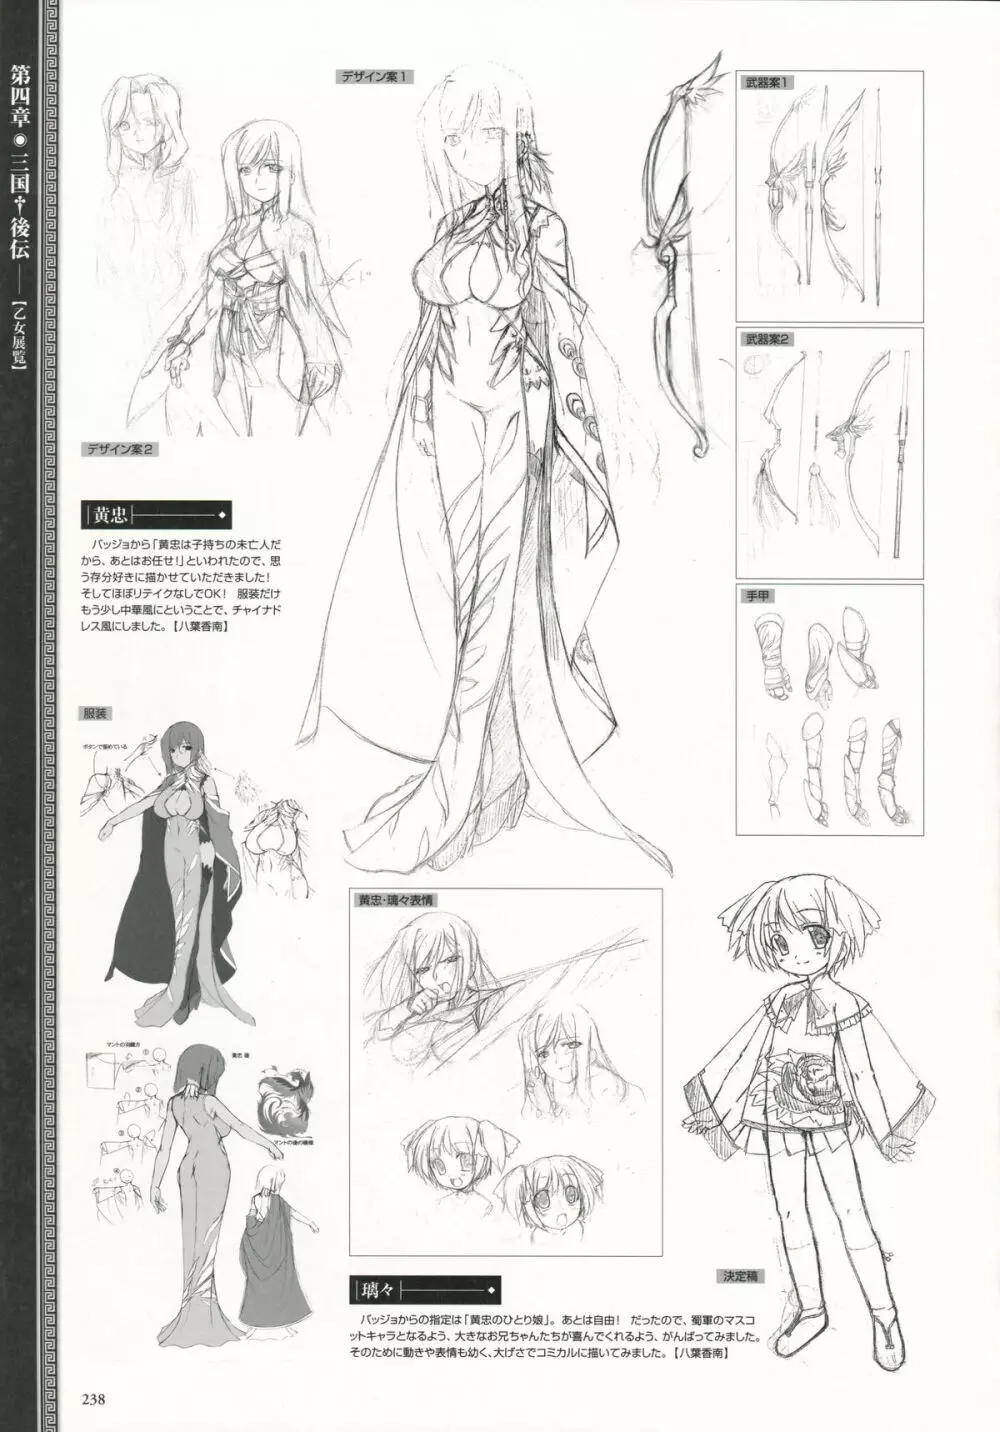 Shin-Koihime Musou Otome Ryouran Sangokushi Engi Perfect Visual Book 224ページ